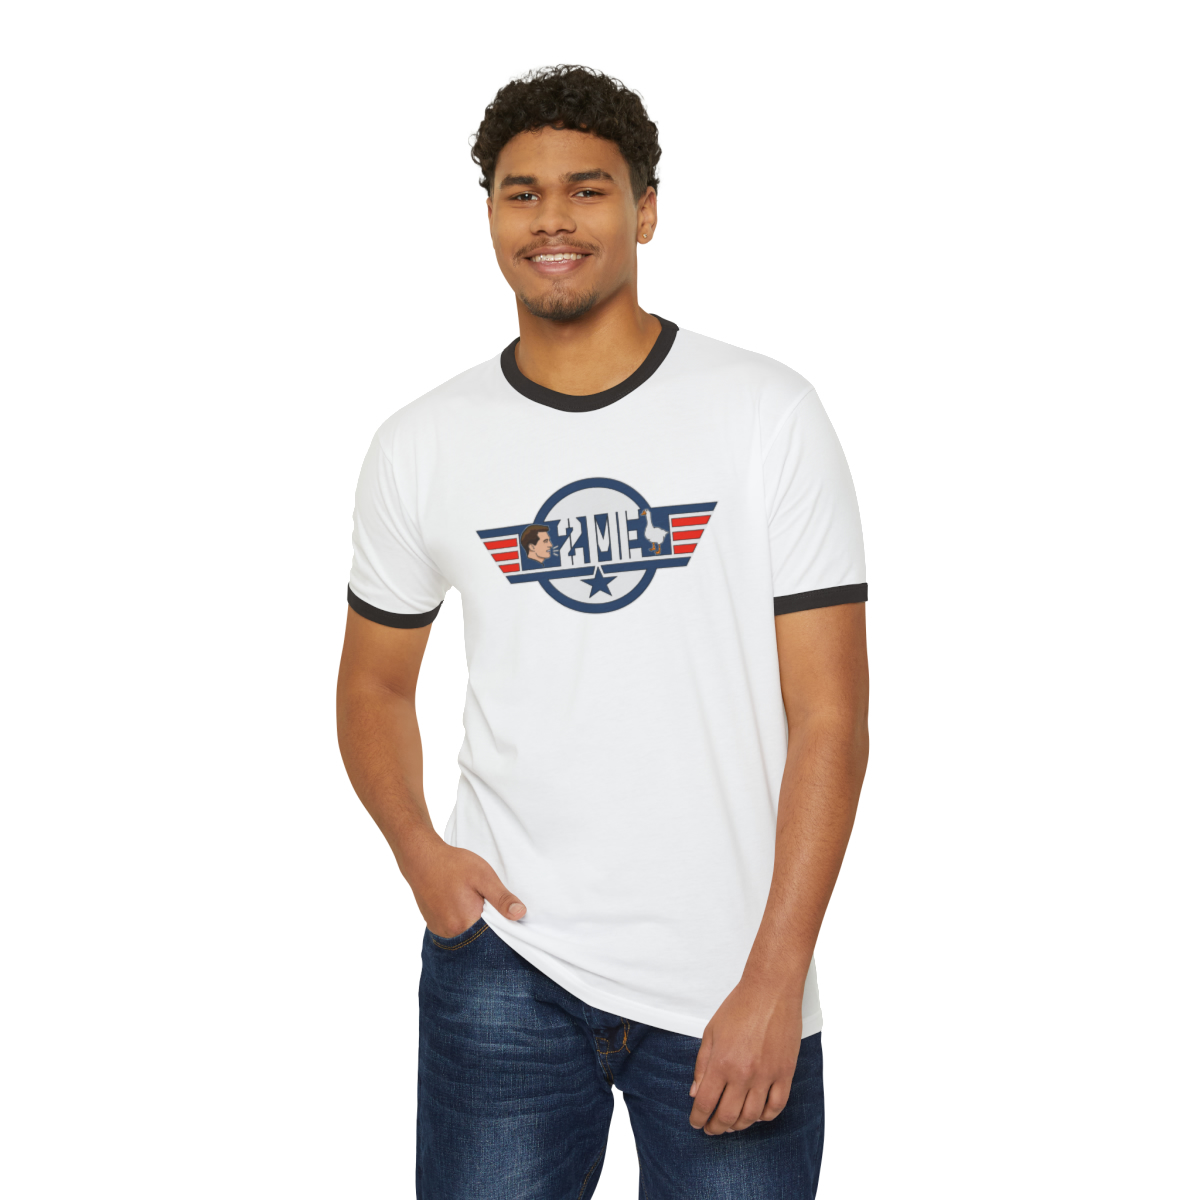 Goose (clean) - Unisex Cotton Ringer T-Shirt